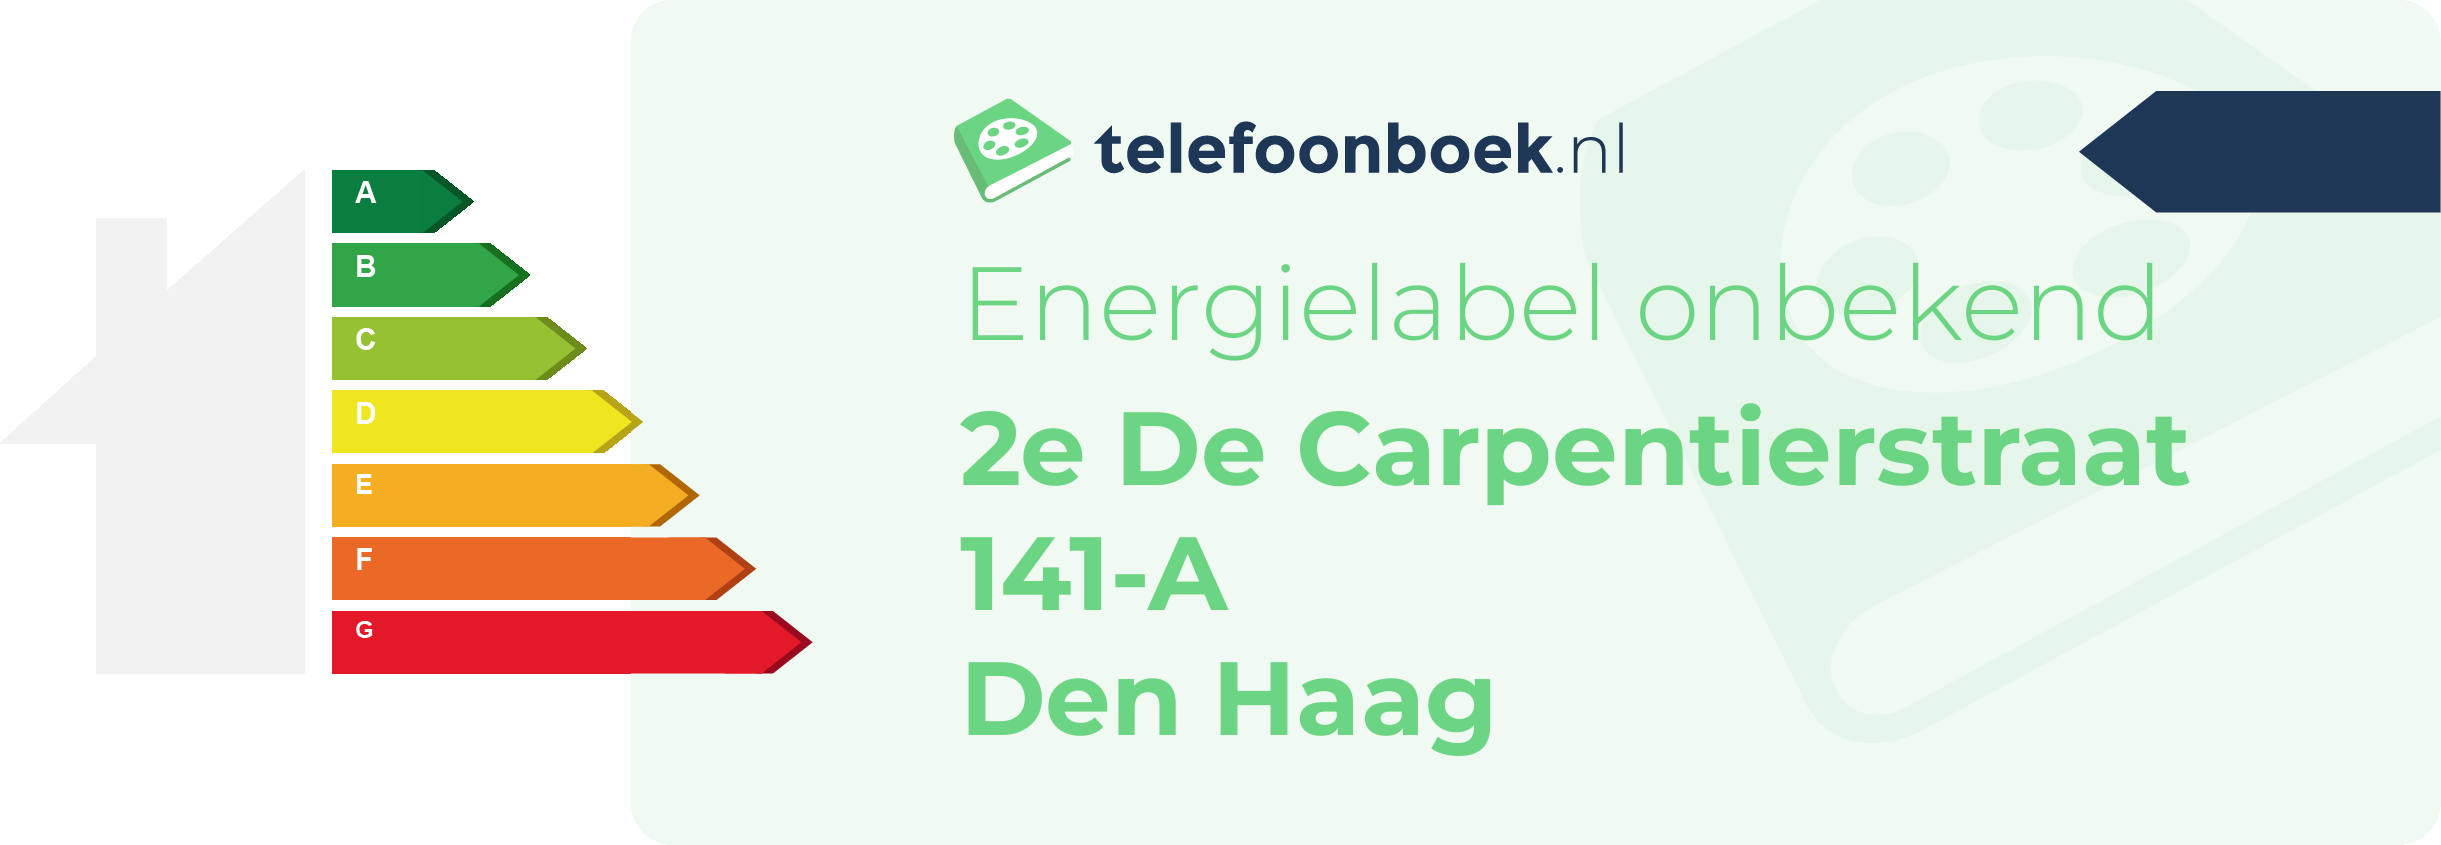 Energielabel 2e De Carpentierstraat 141-A Den Haag